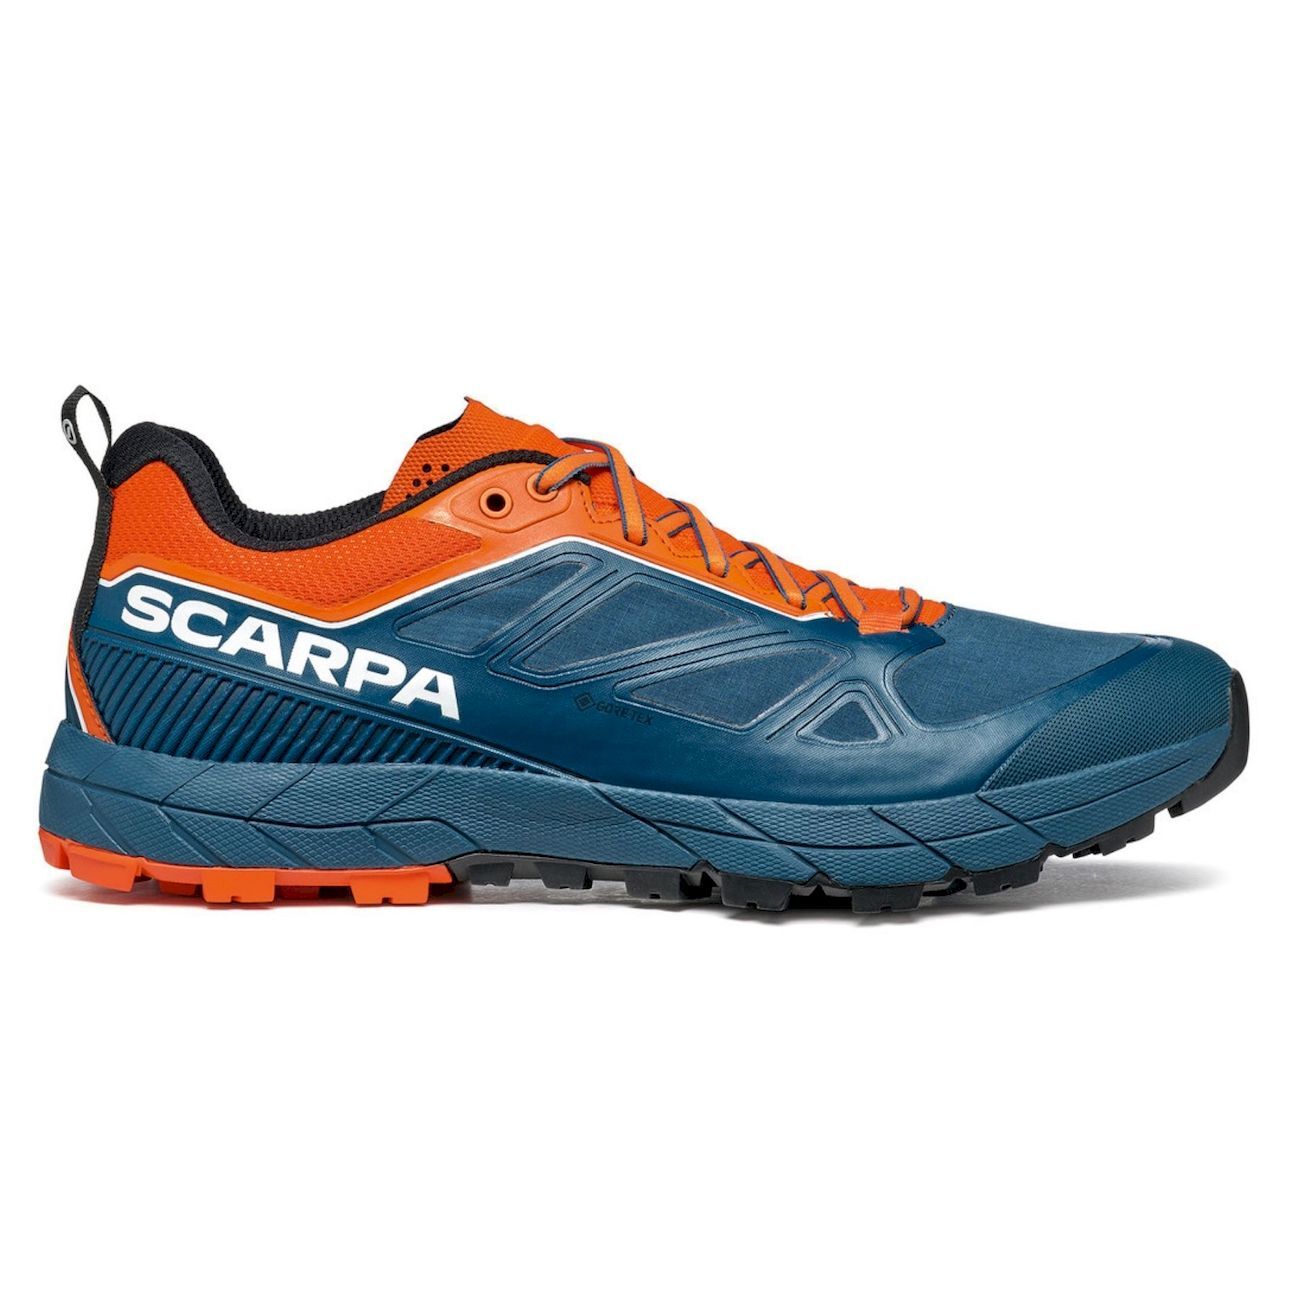 Scarpa Rapid GTX - Approach shoes - Men's